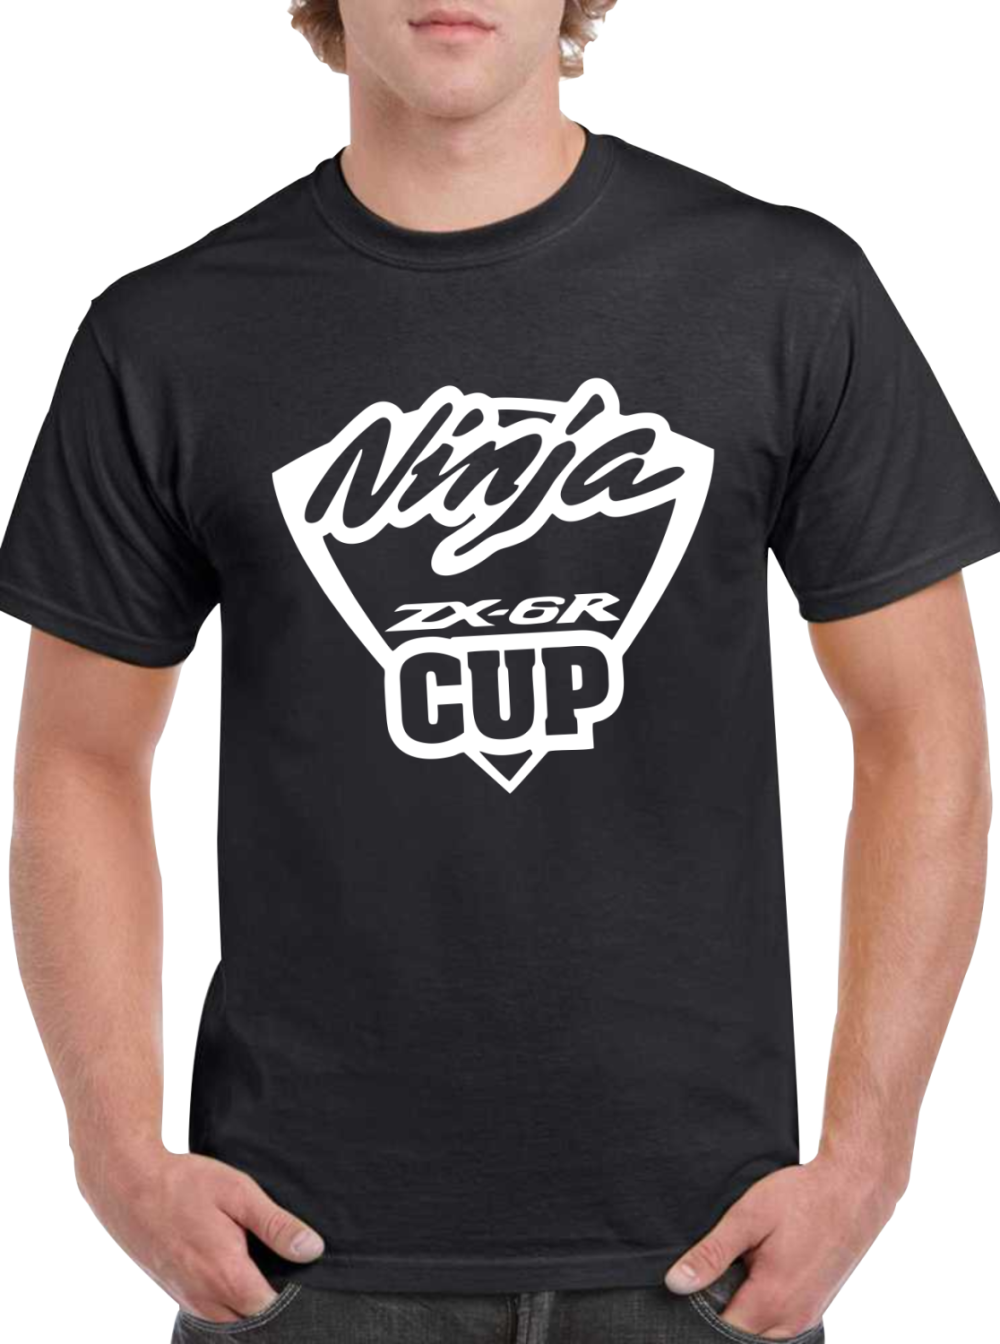 camiseta ninja zx6r cup